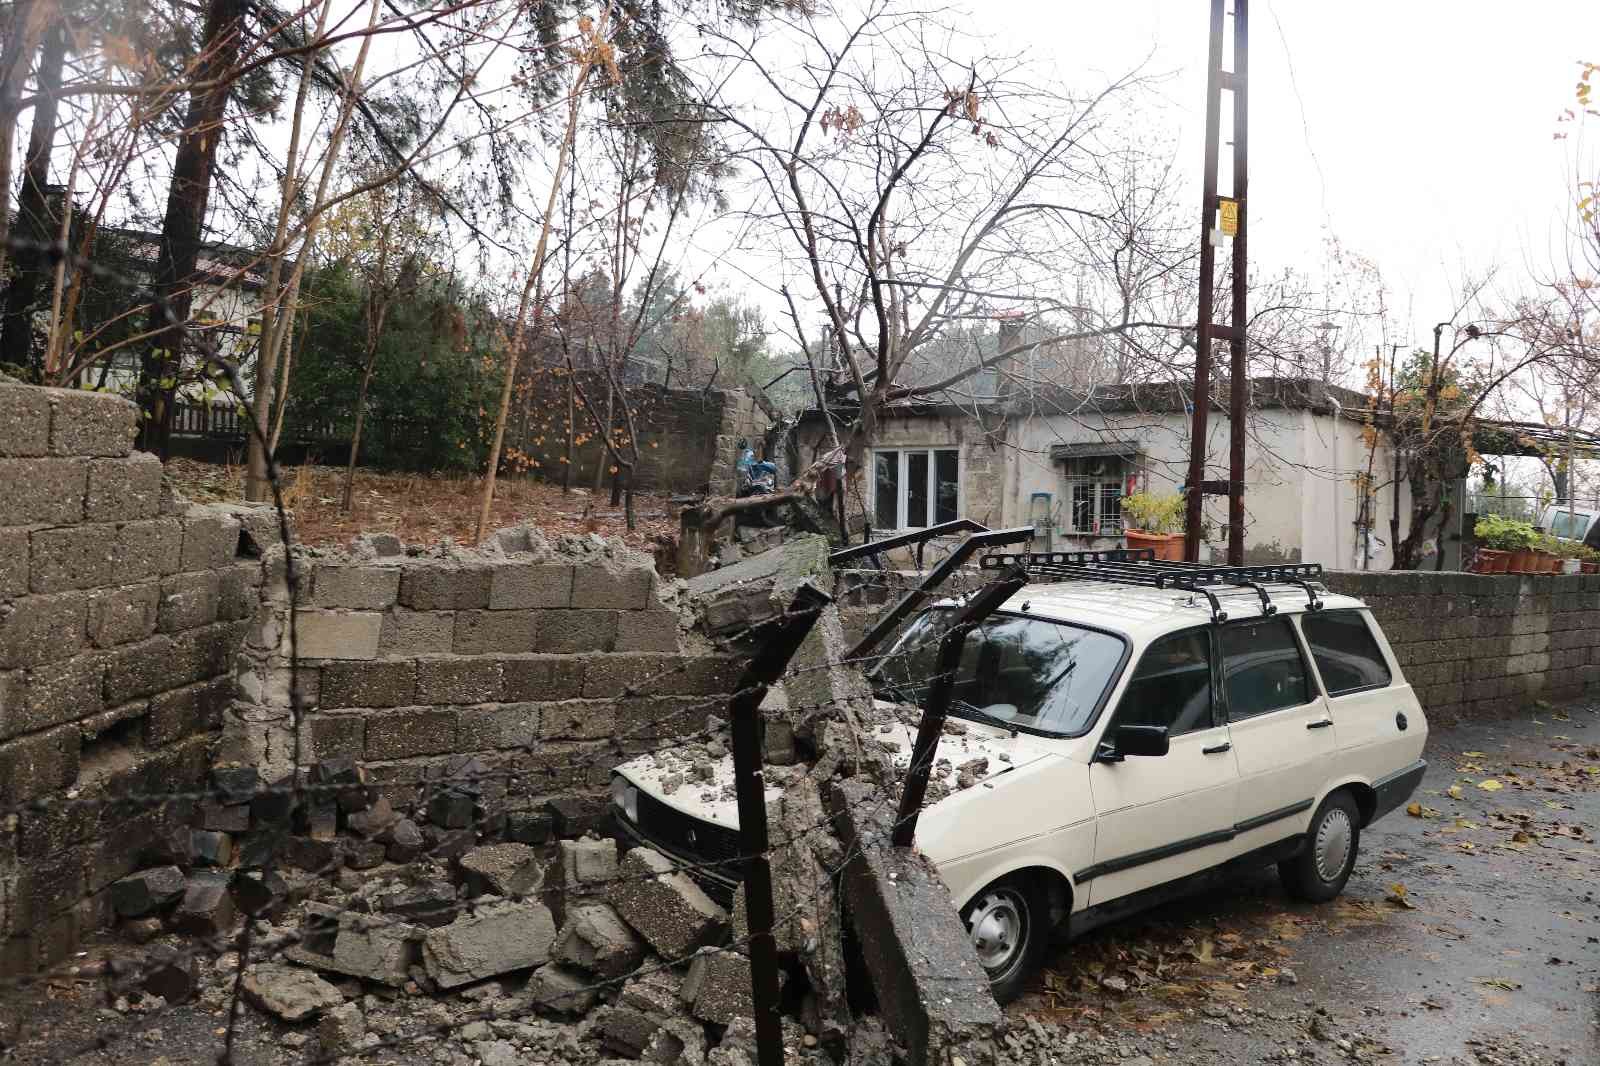 Orman Bölge Müdürlüğü’nün istinat duvarı devrildi #kahramanmaras